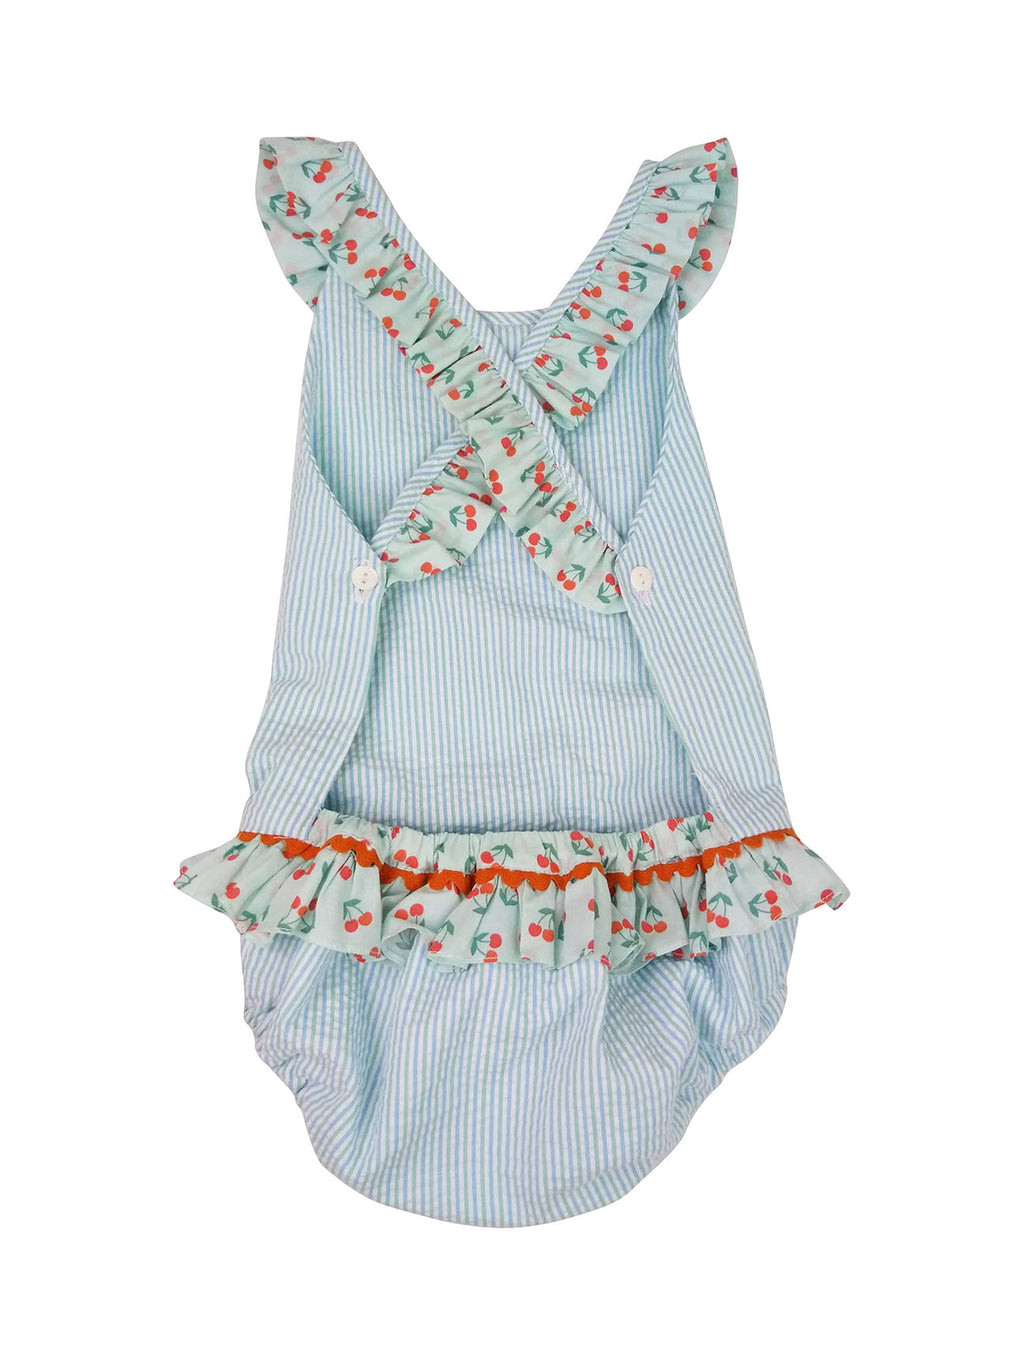 Cherries girl's Seersucker bathing suit - Little Threads Inc. Children's Clothing